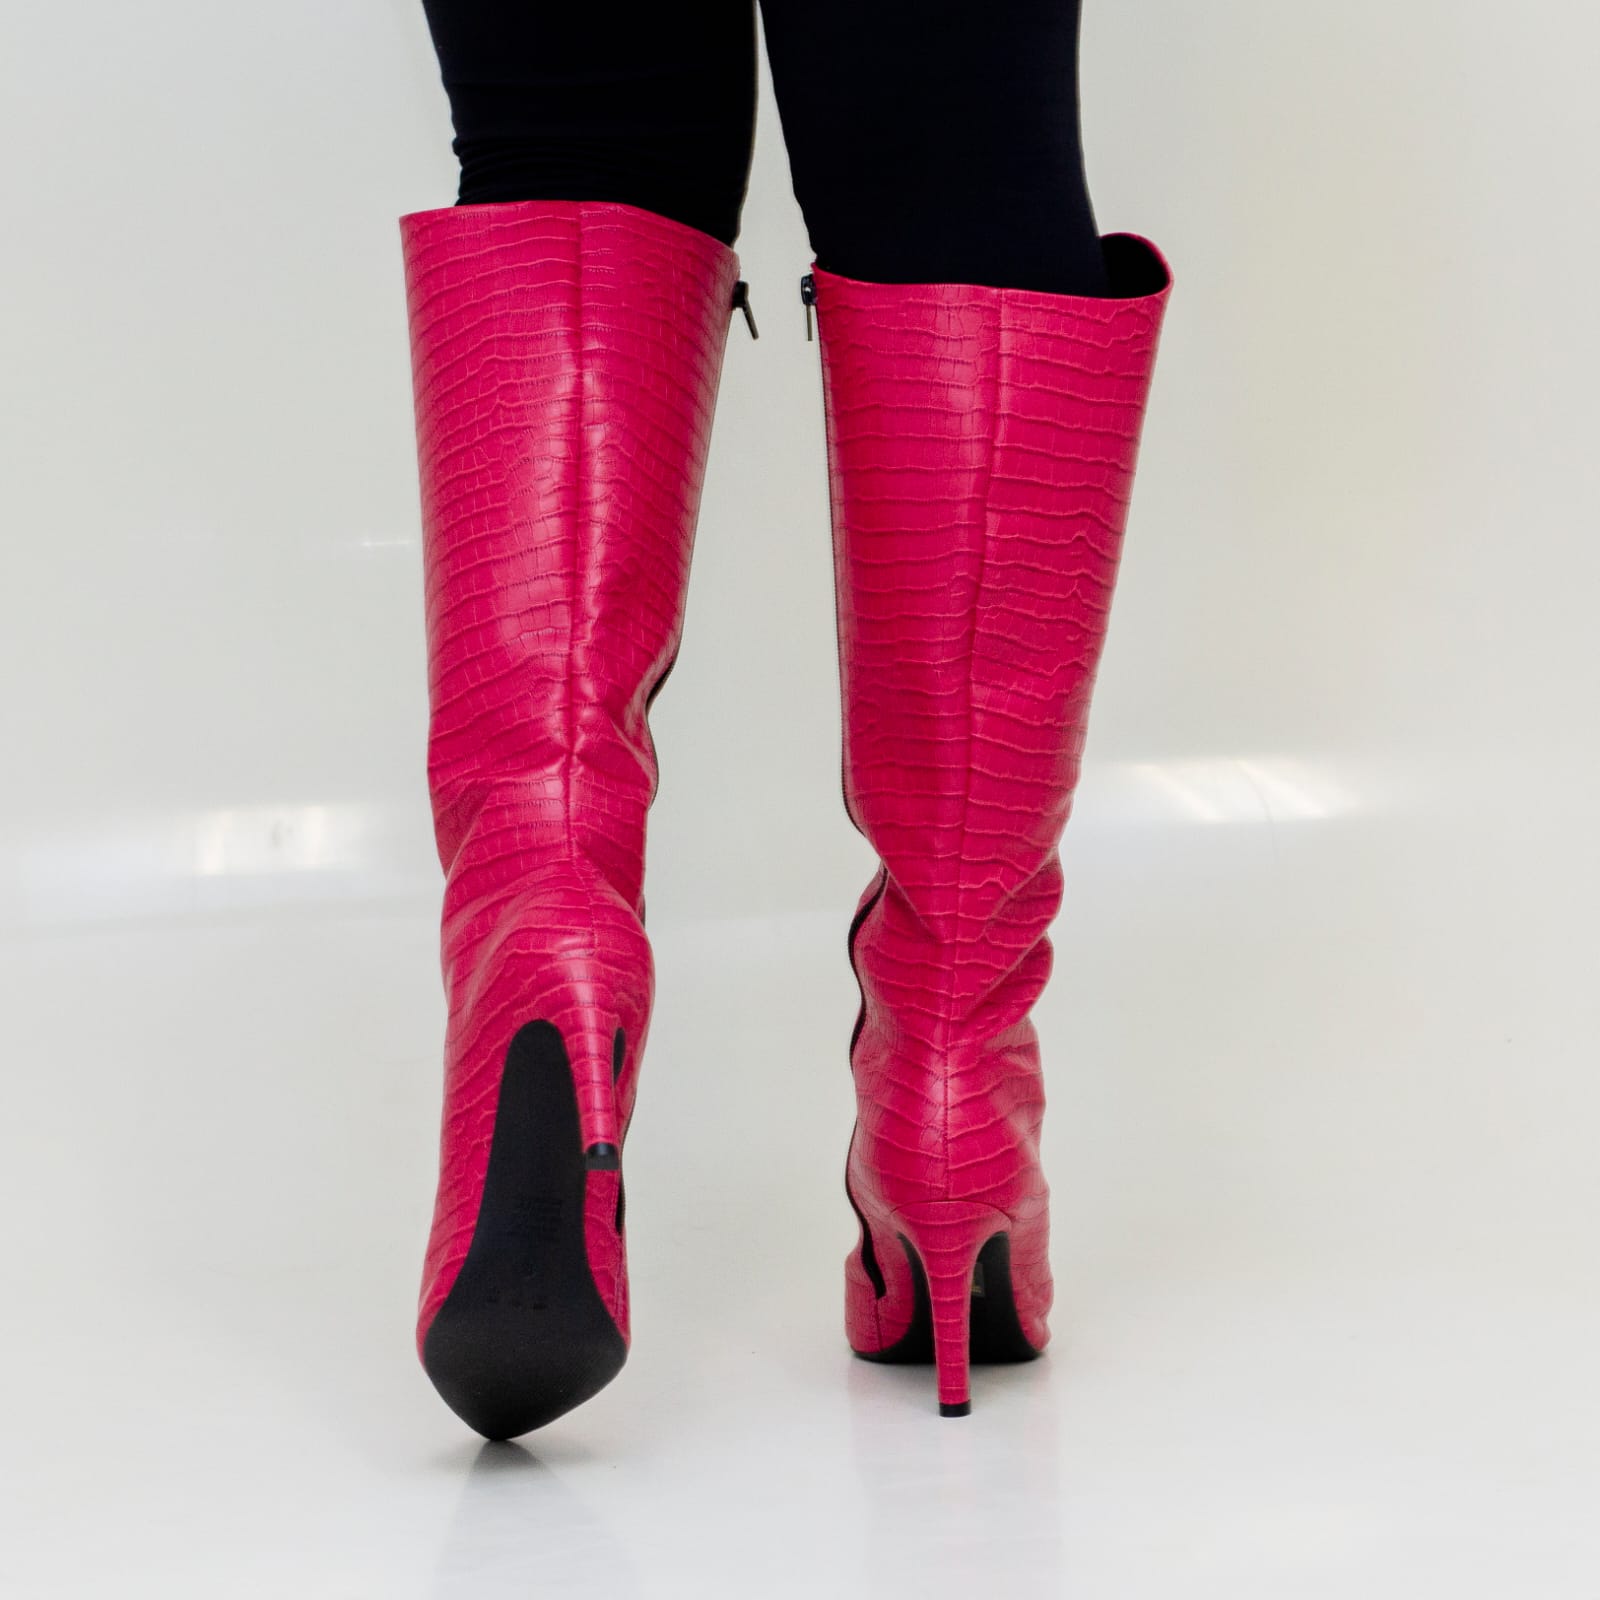 Bota Cano Longo com Textura Vivaice Pink 54-303308  - Elvis Calçados